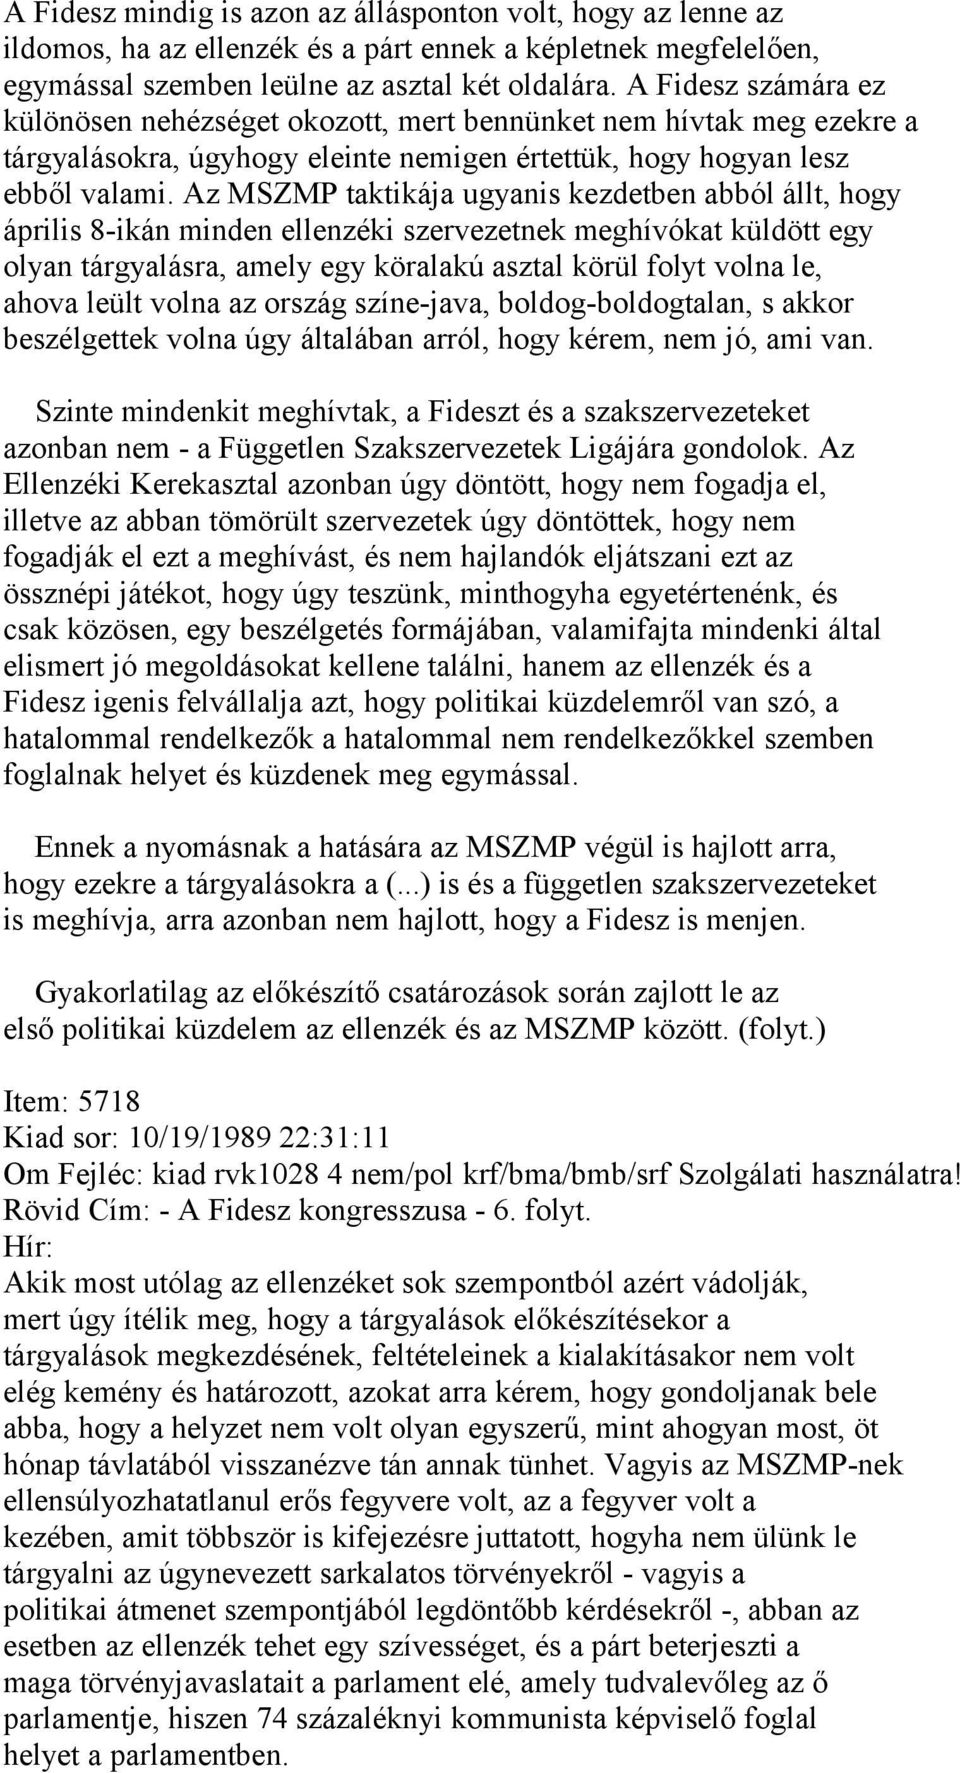 Az MSZMP taktikája ugyanis kezdetben abból állt, hogy április 8-ikán minden ellenzéki szervezetnek meghívókat küldött egy olyan tárgyalásra, amely egy köralakú asztal körül folyt volna le, ahova